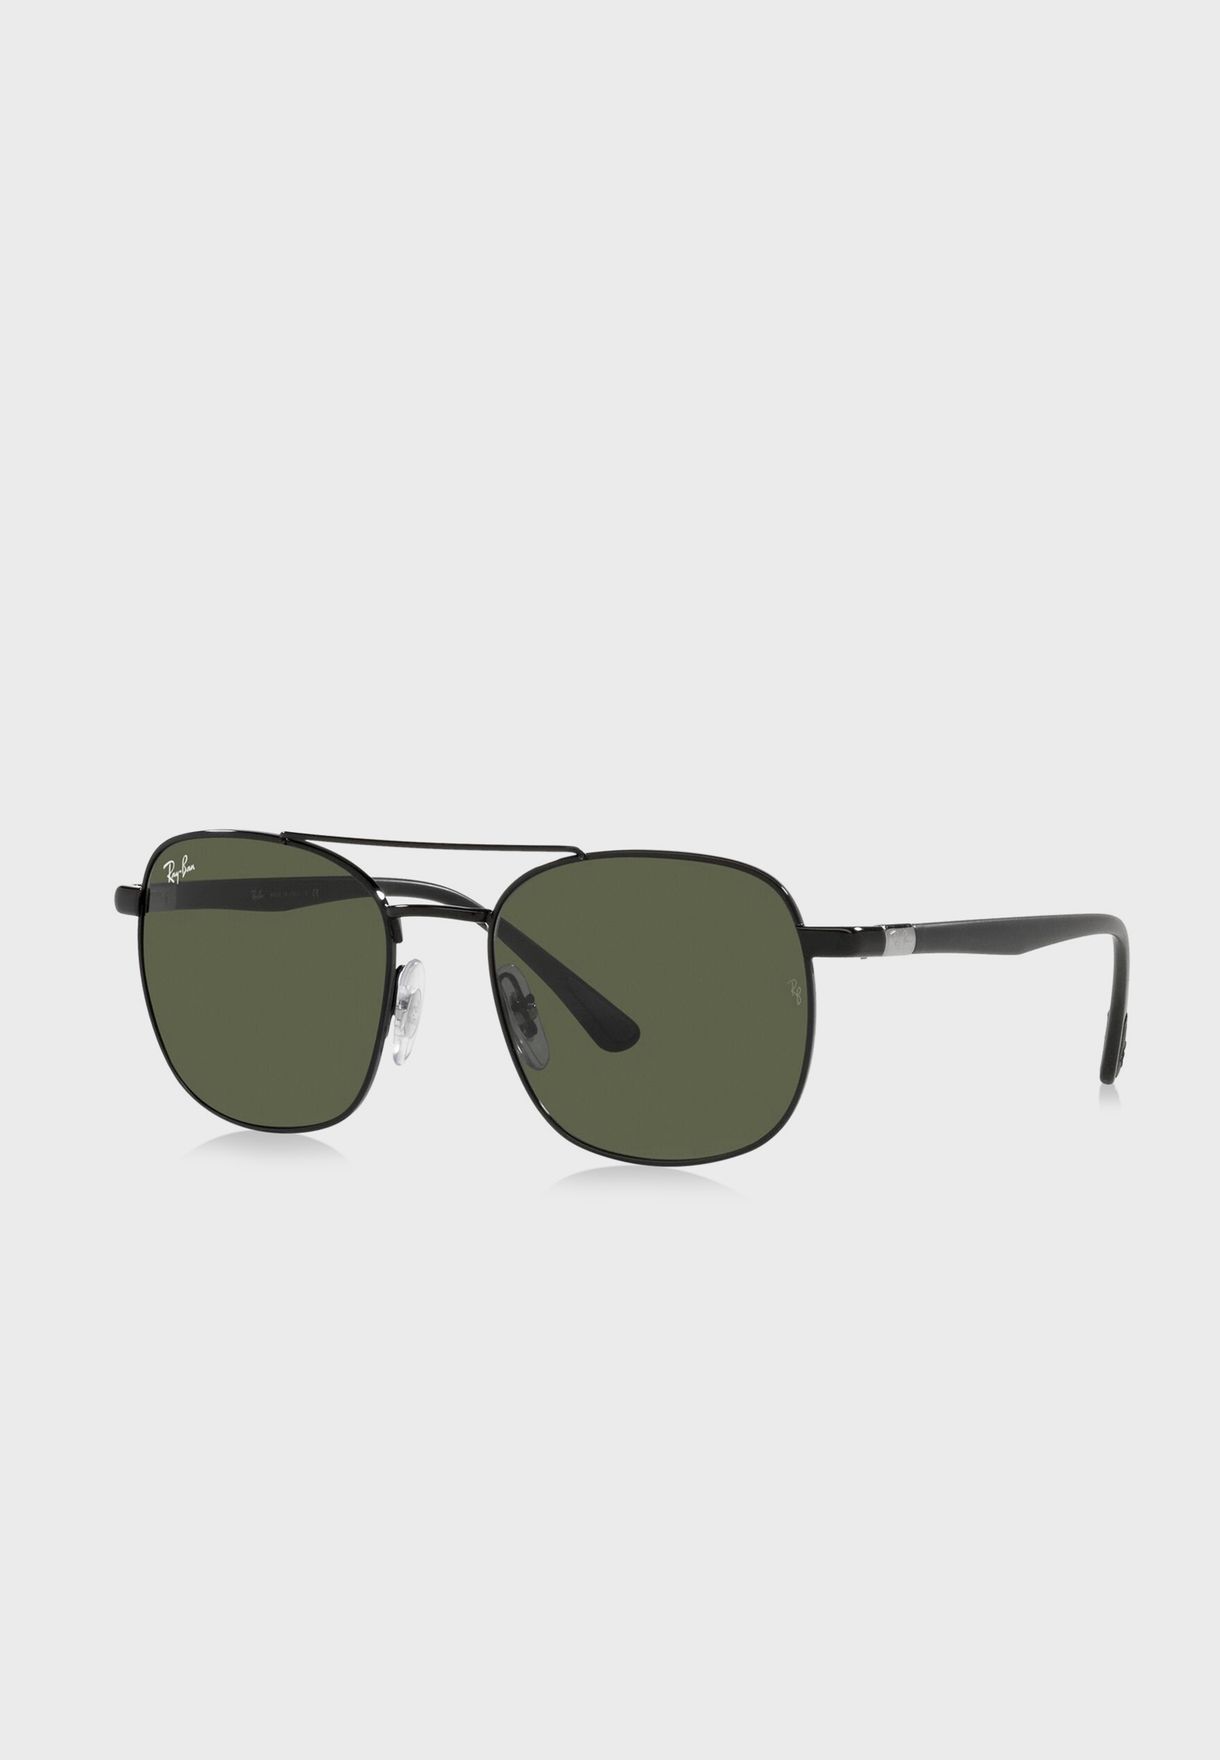 0Rb3670 Sunglasses